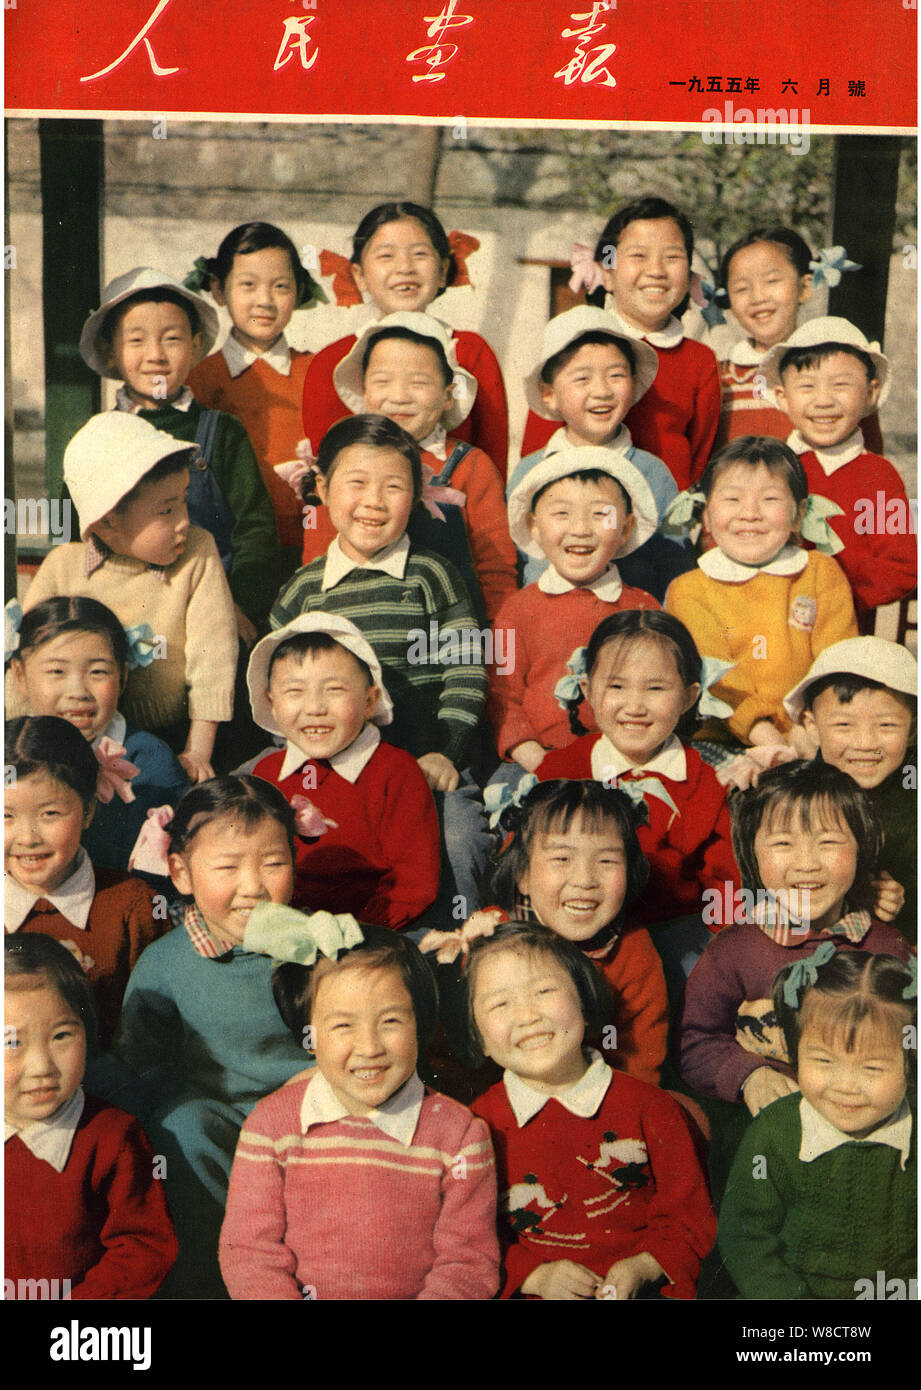 Questo coperchio della Cina rilasciati pittorico in Giugno 1955 dispone di un gruppo di giovani ragazzi cinesi che posano per una foto con un sorriso. Foto Stock